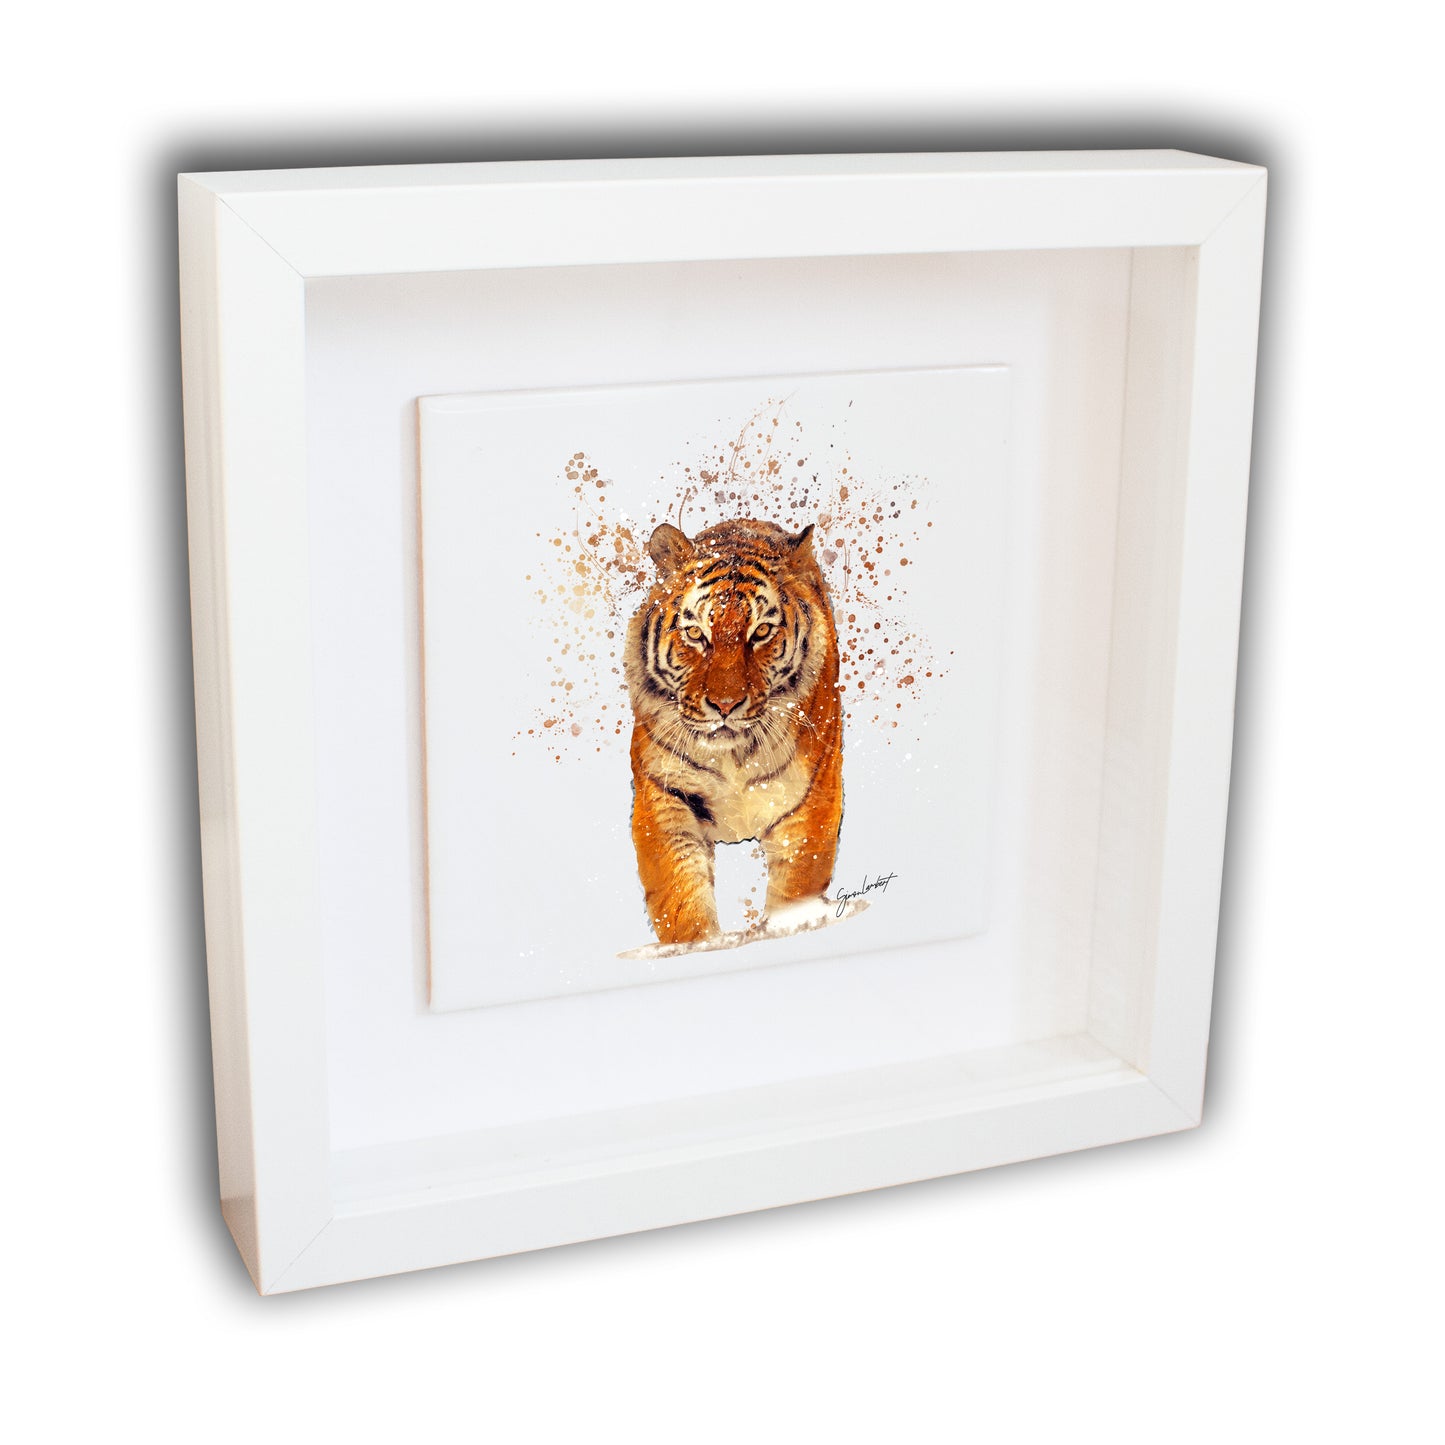 Tiger Portrait Brush Splatter Style Artwork - Framed CERAMIC TILE Art